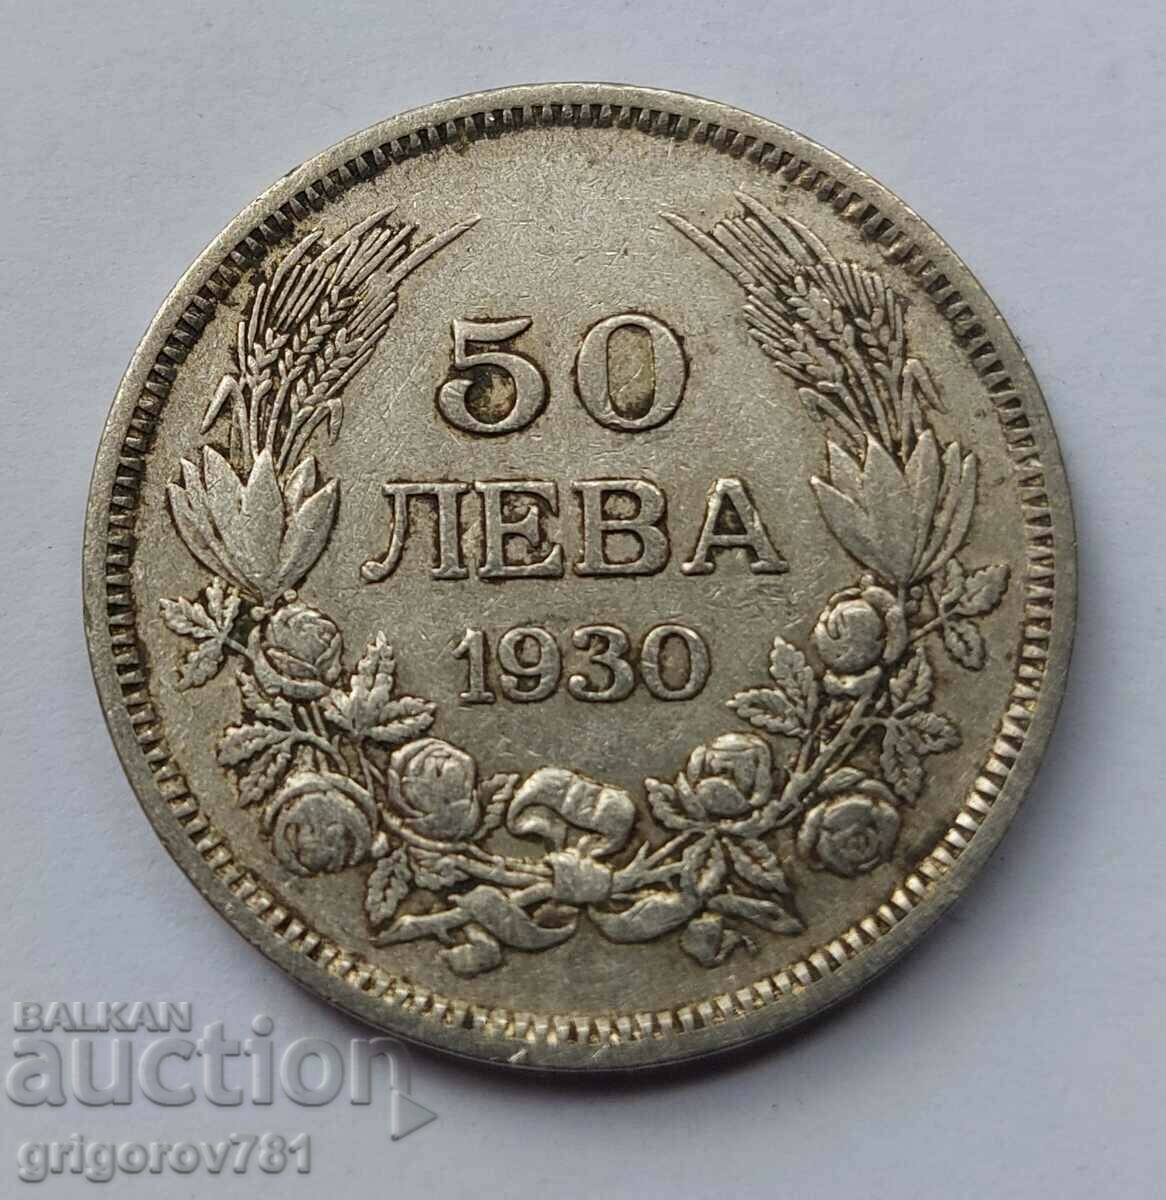 50 leva silver Bulgaria 1930 - silver coin #58